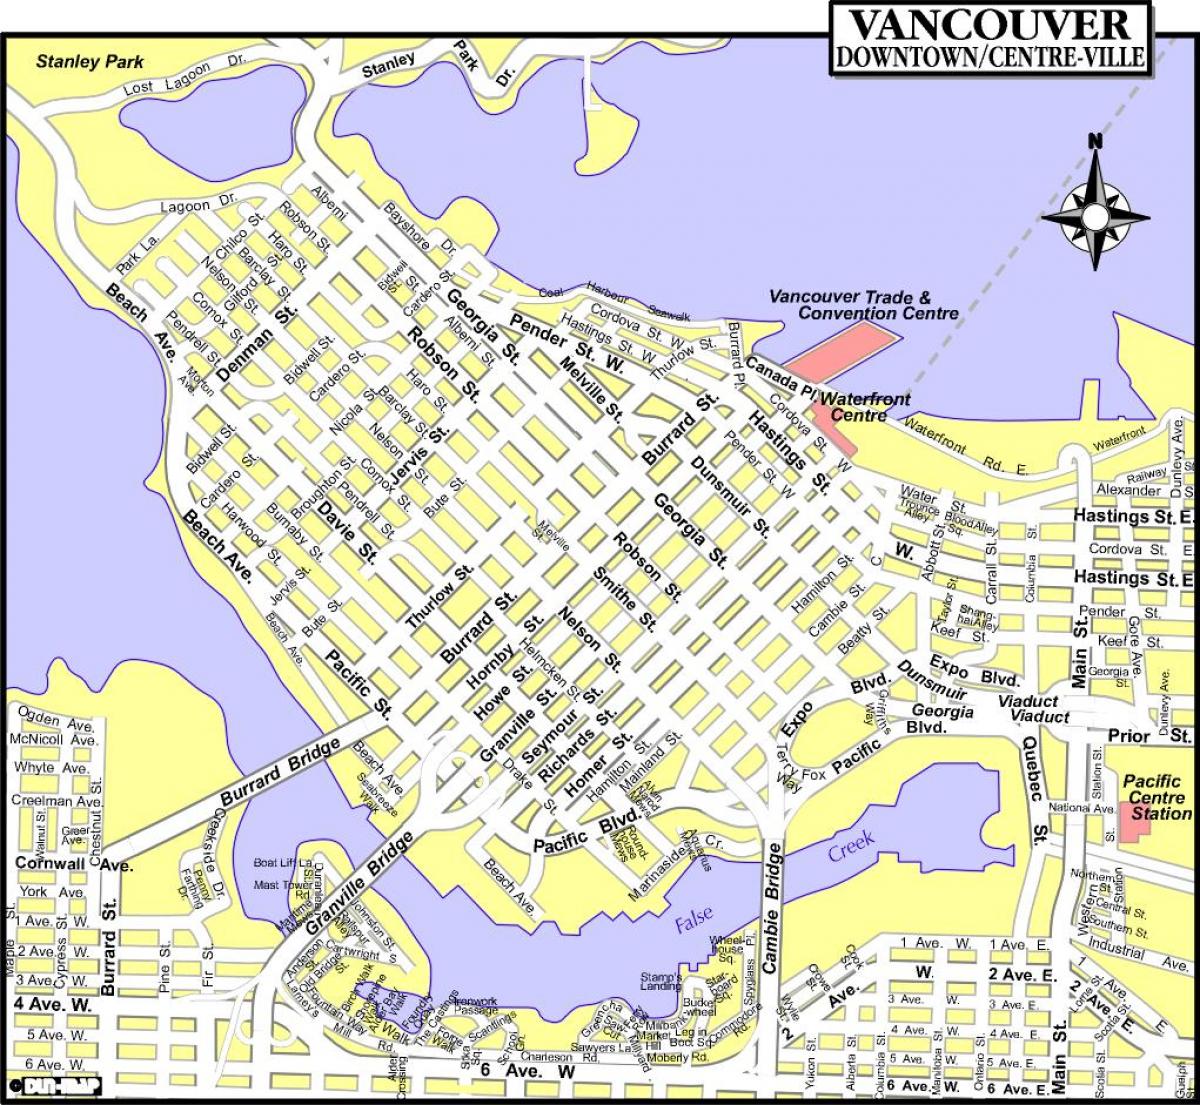 Χάρτης από το κέντρο της πόλης βανκούβερ π. χ.